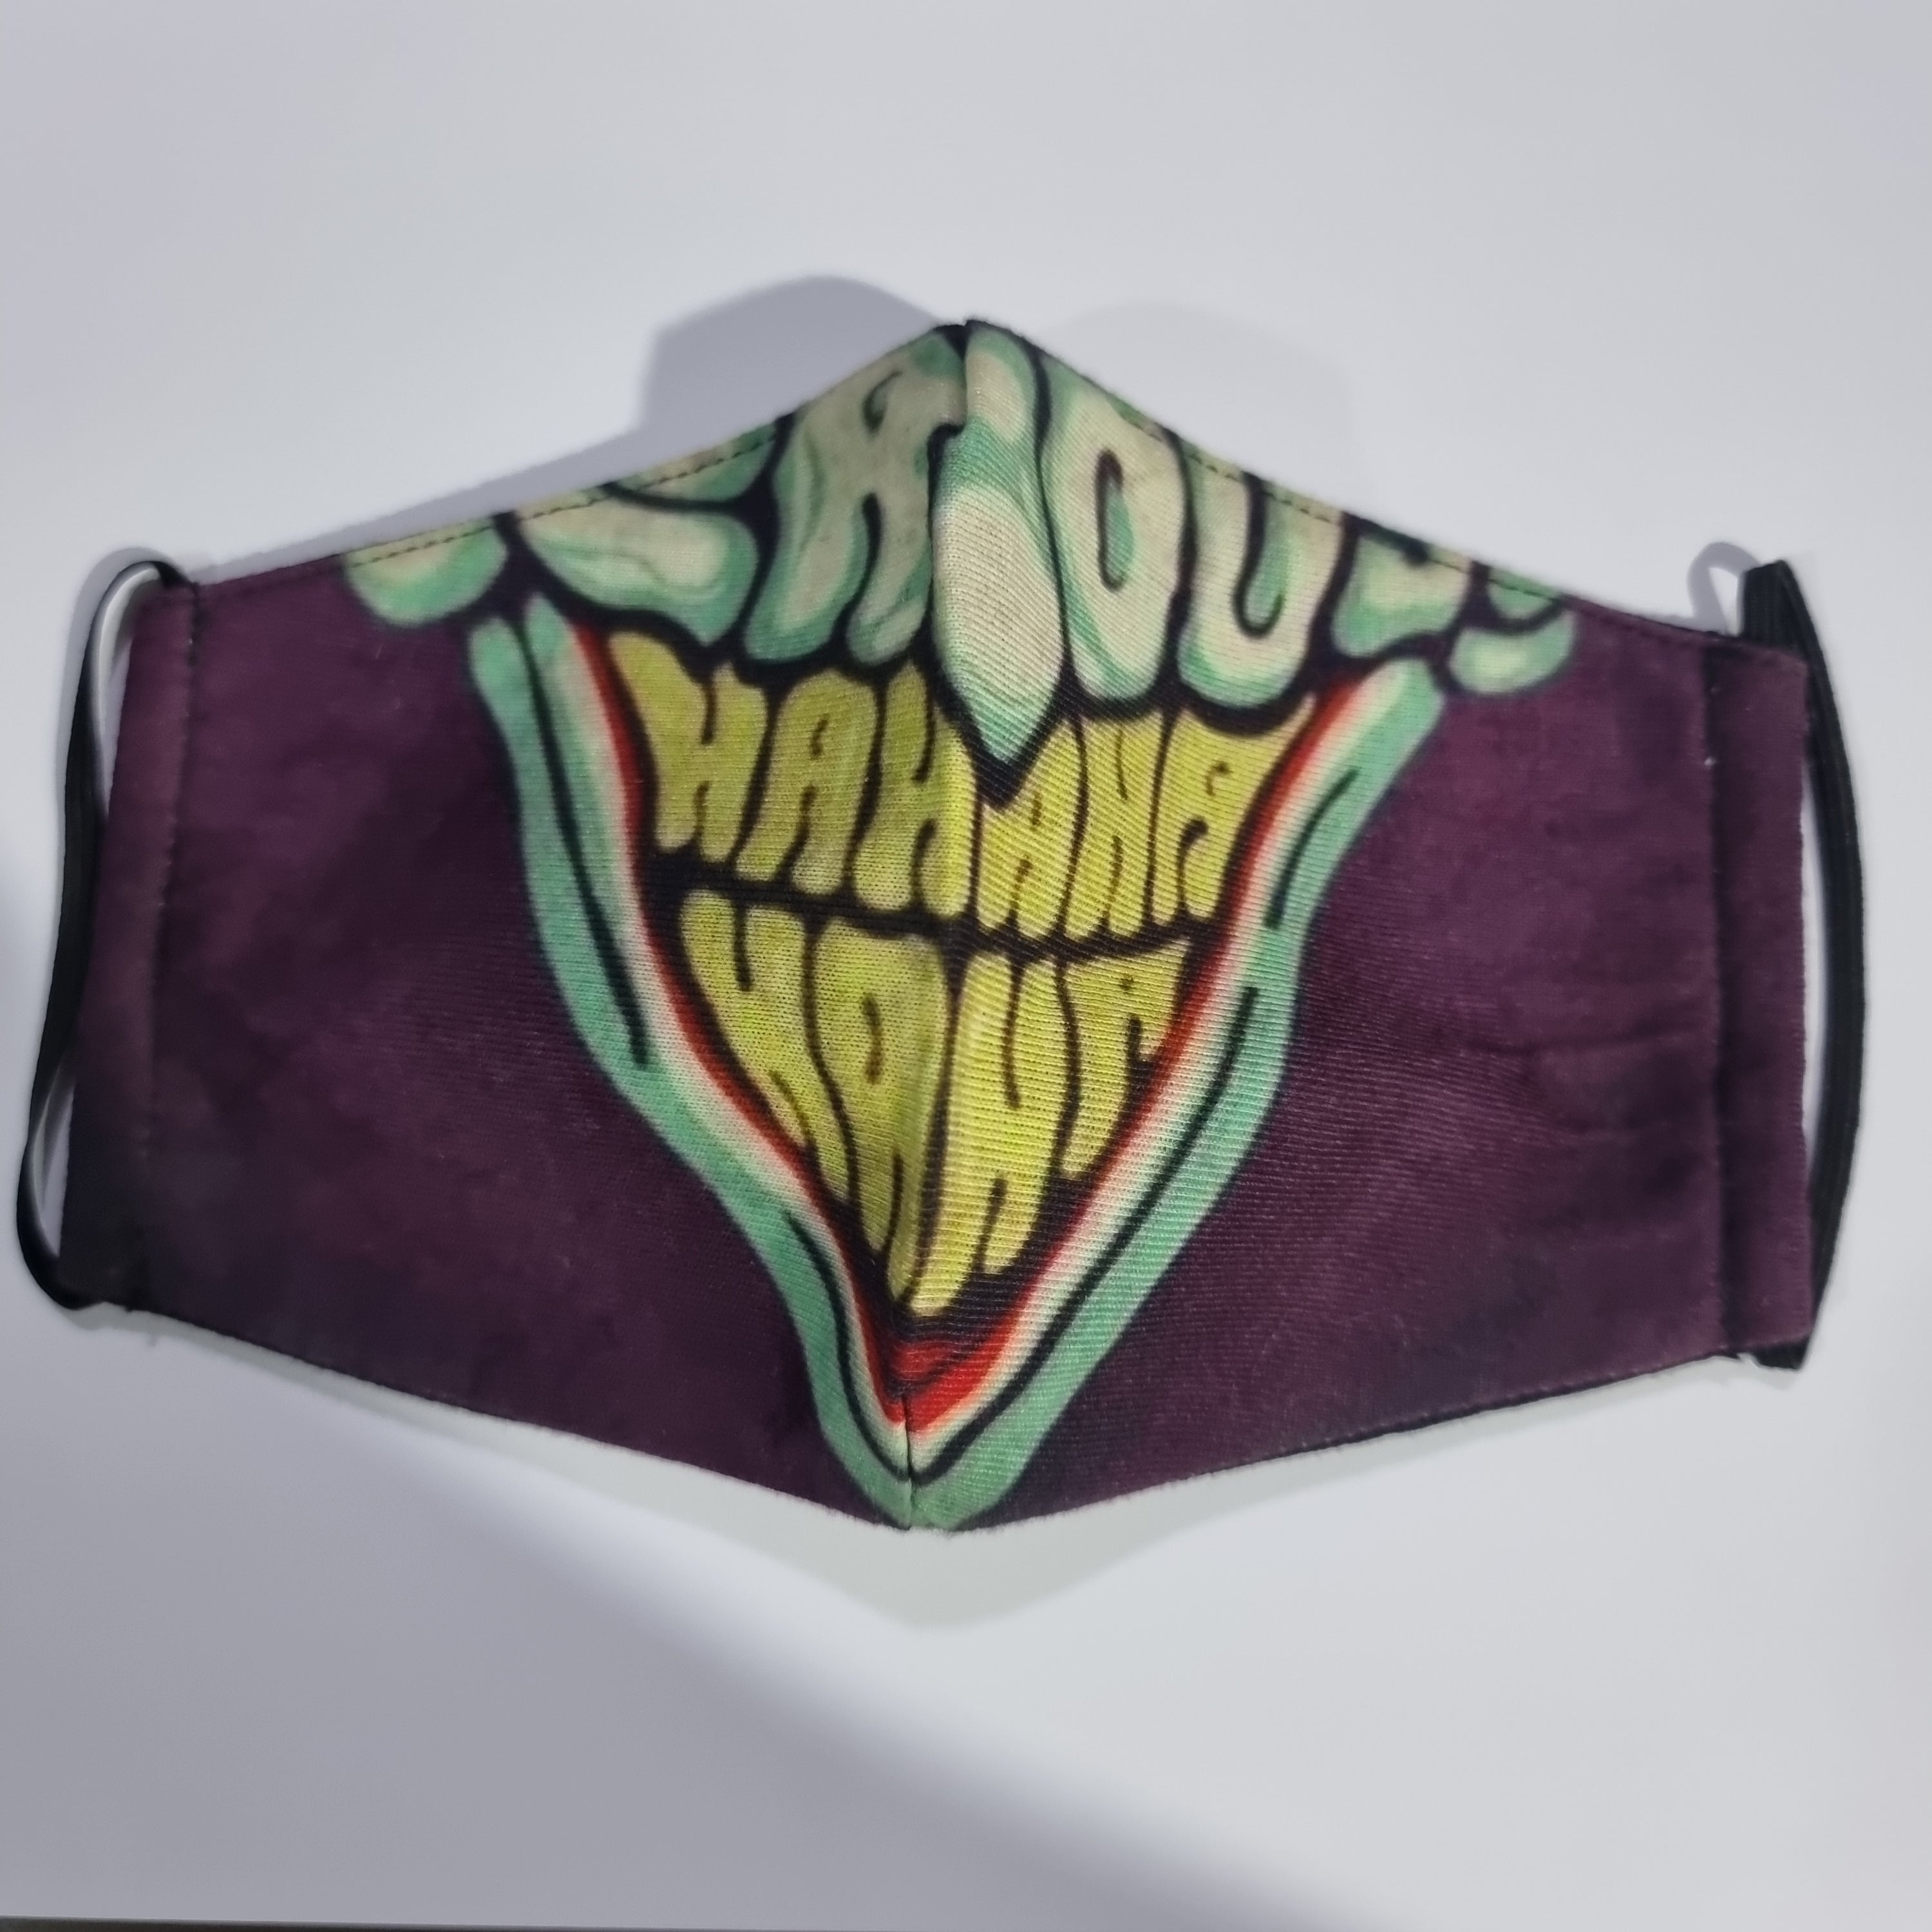 Joker purple mask